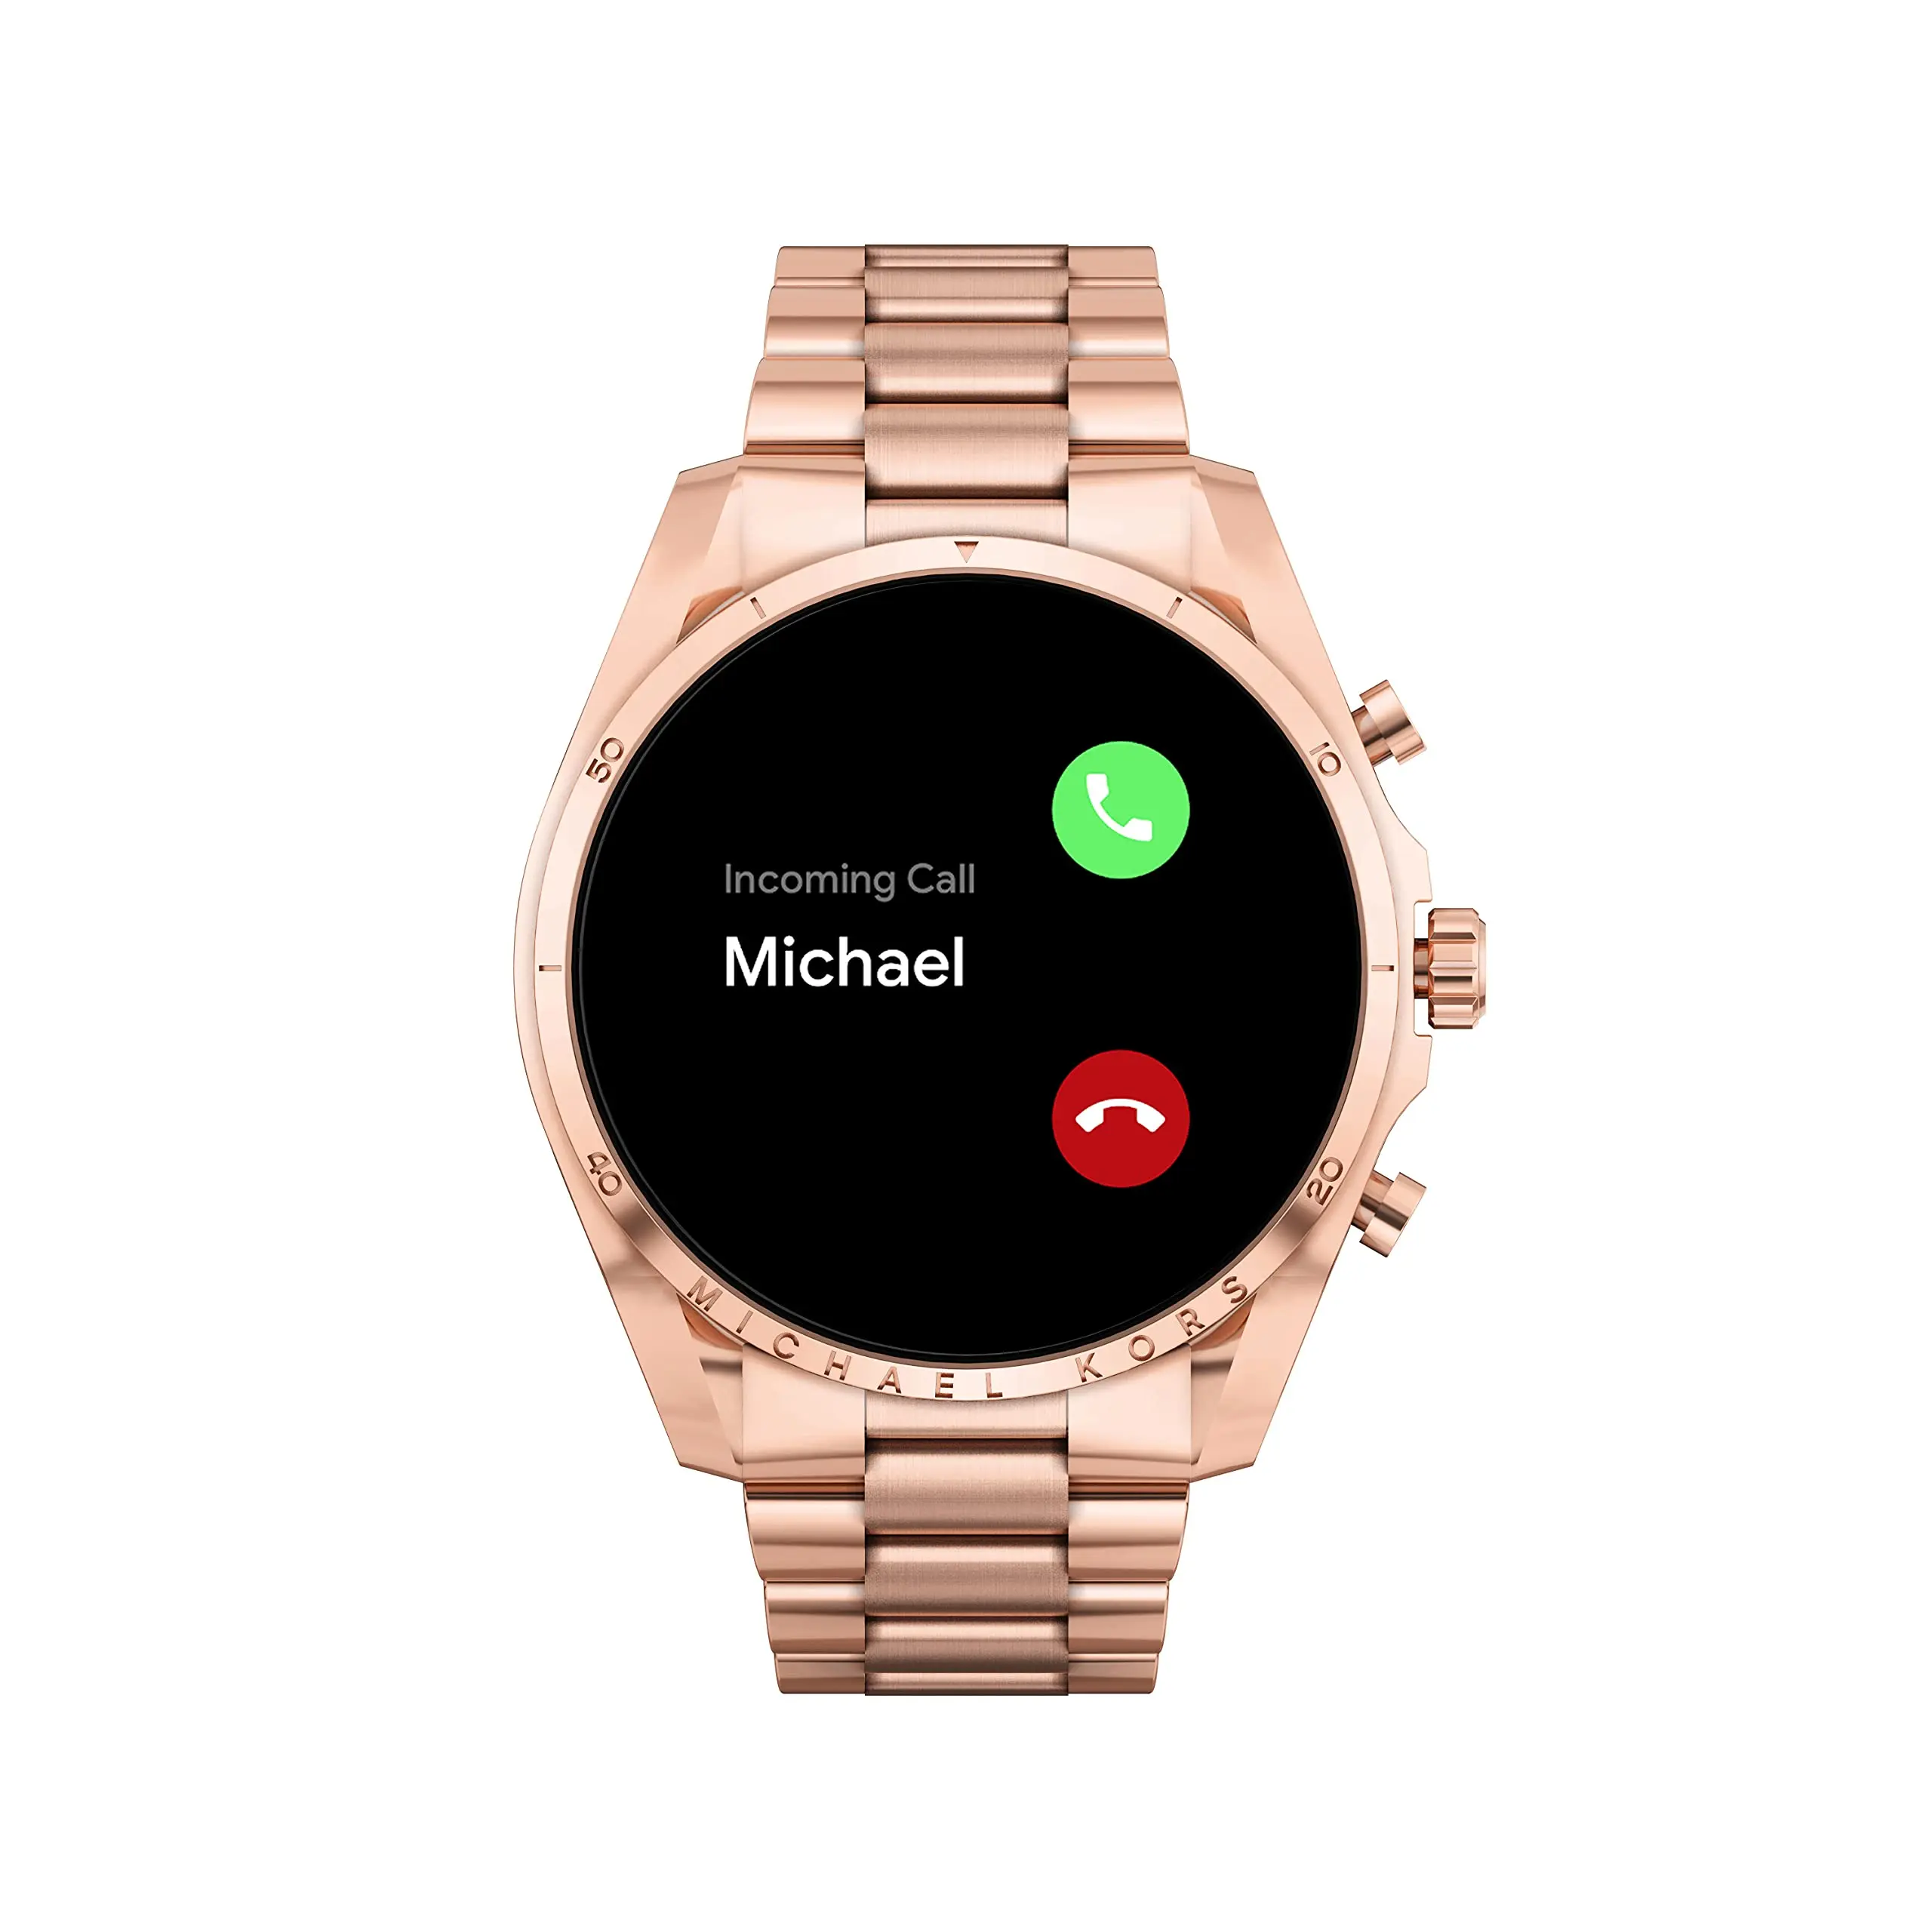 opiniones reloj michael kors inteligente - Qué tan buena es la marca Michael Kors en relojes